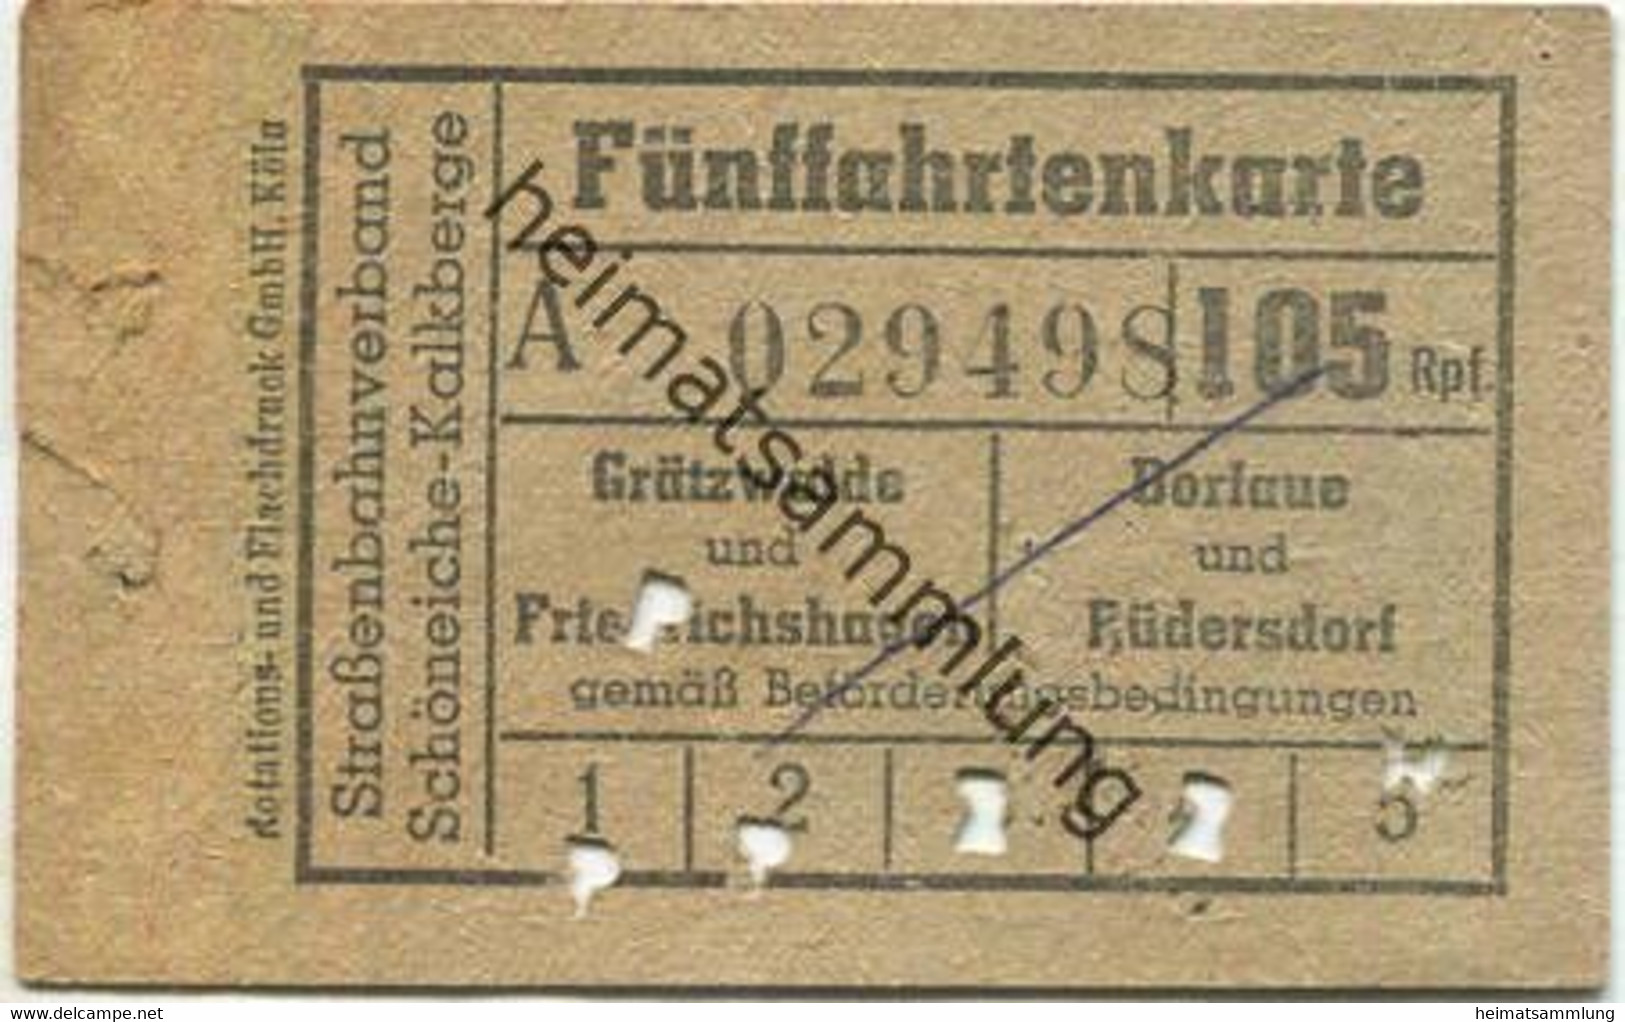 Deutschland - Strassenbahnverband Schöneiche Kalkberge - Fünffahrtenkarte 105Rpf. - Grätzwalde Und Friedrichshagen Oder - Europe